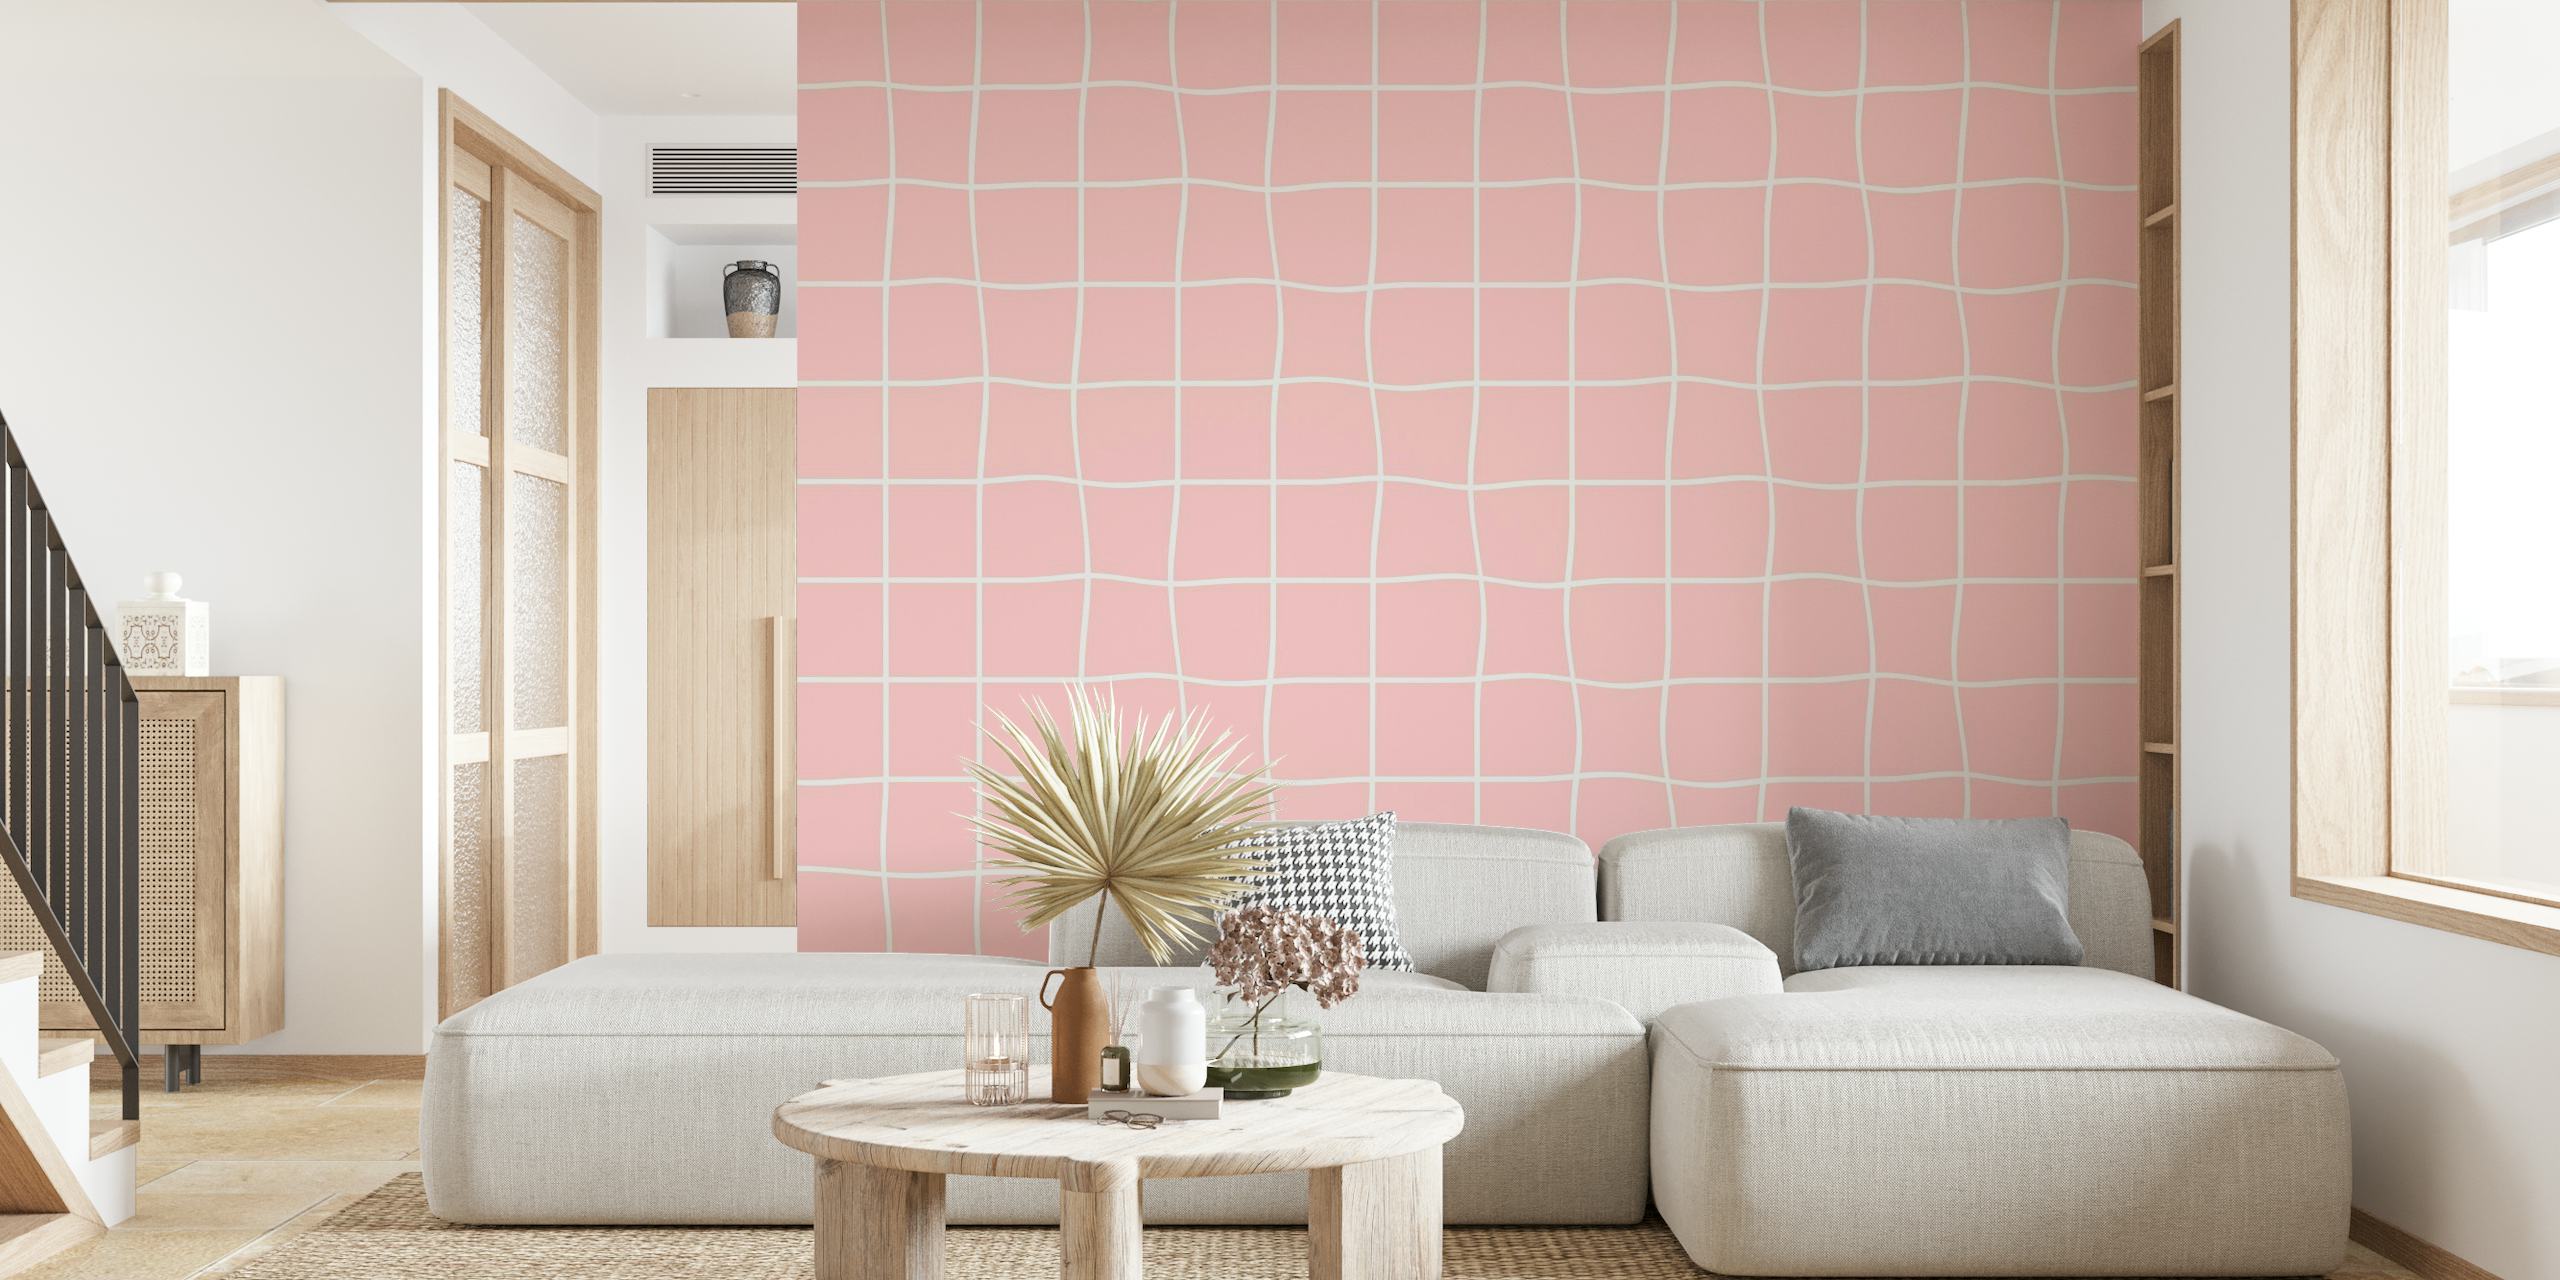 Mural de parede rosa com padrão mínimo de grade branca para decoração de interiores